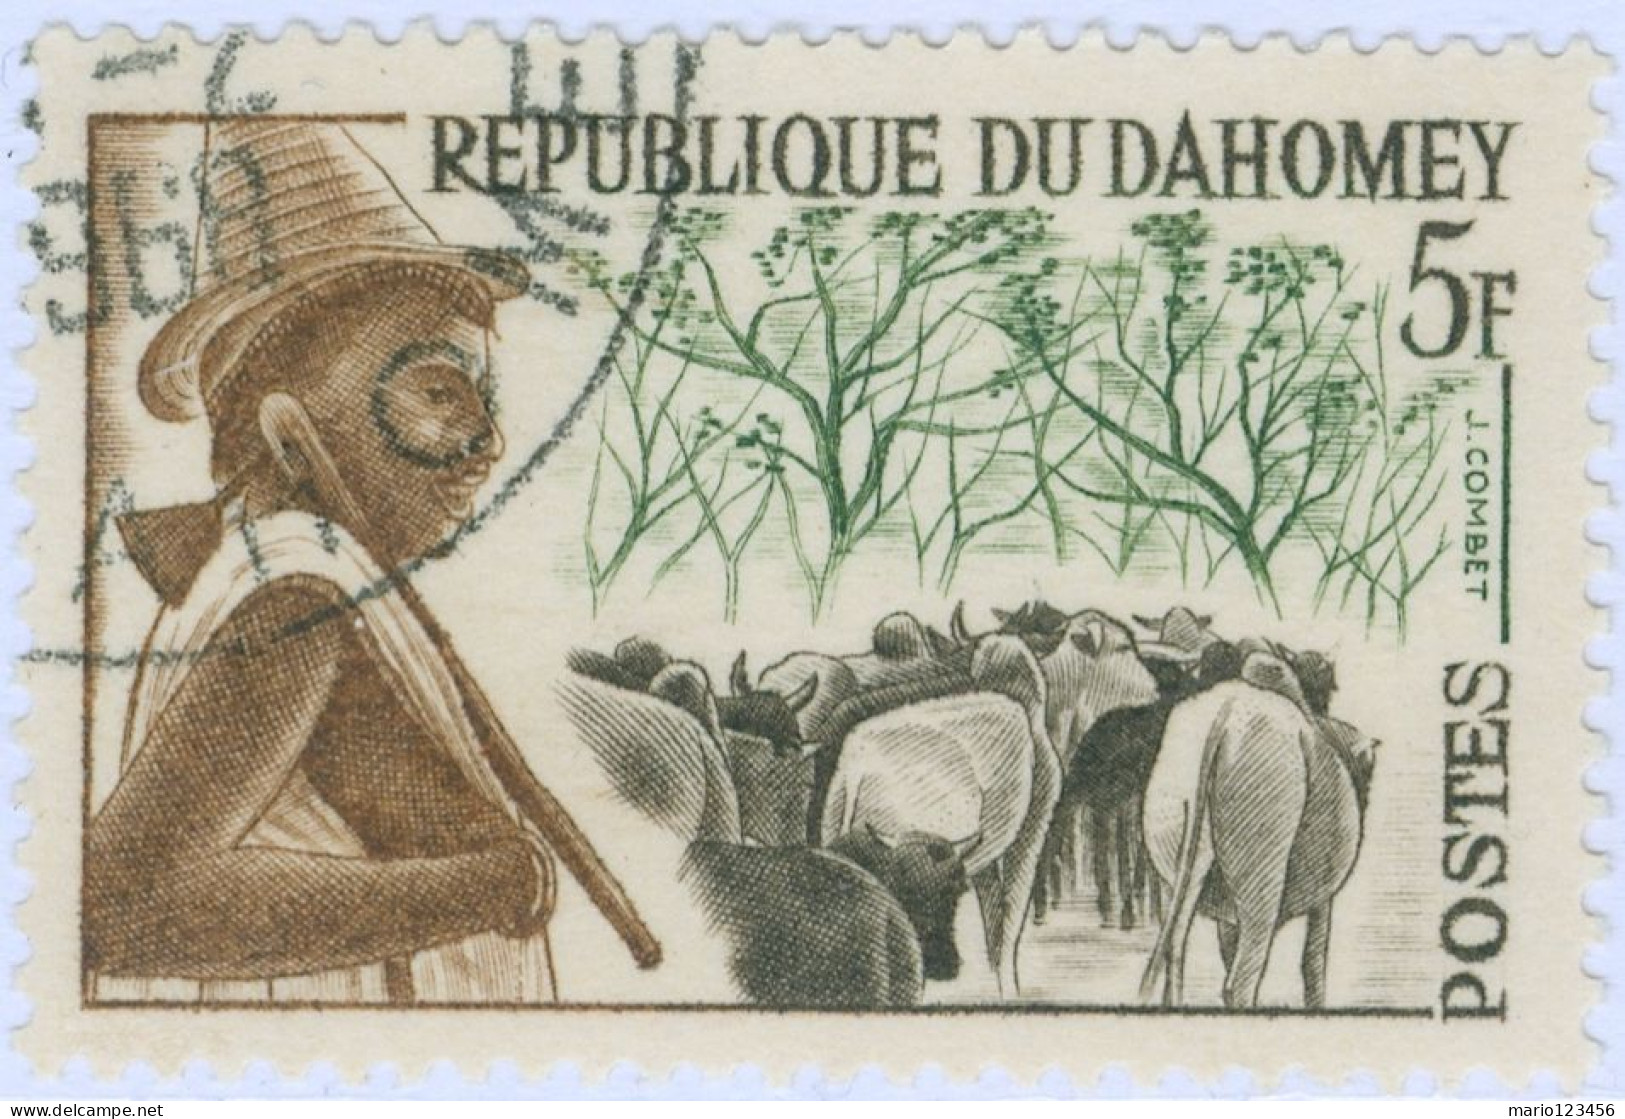 DAHOMEY, TRIBU, 1963, FRANCOBOLLI USATI Mi:DY 202, Scott:DY 162, Yt:DY 181 (0,60) - Used Stamps